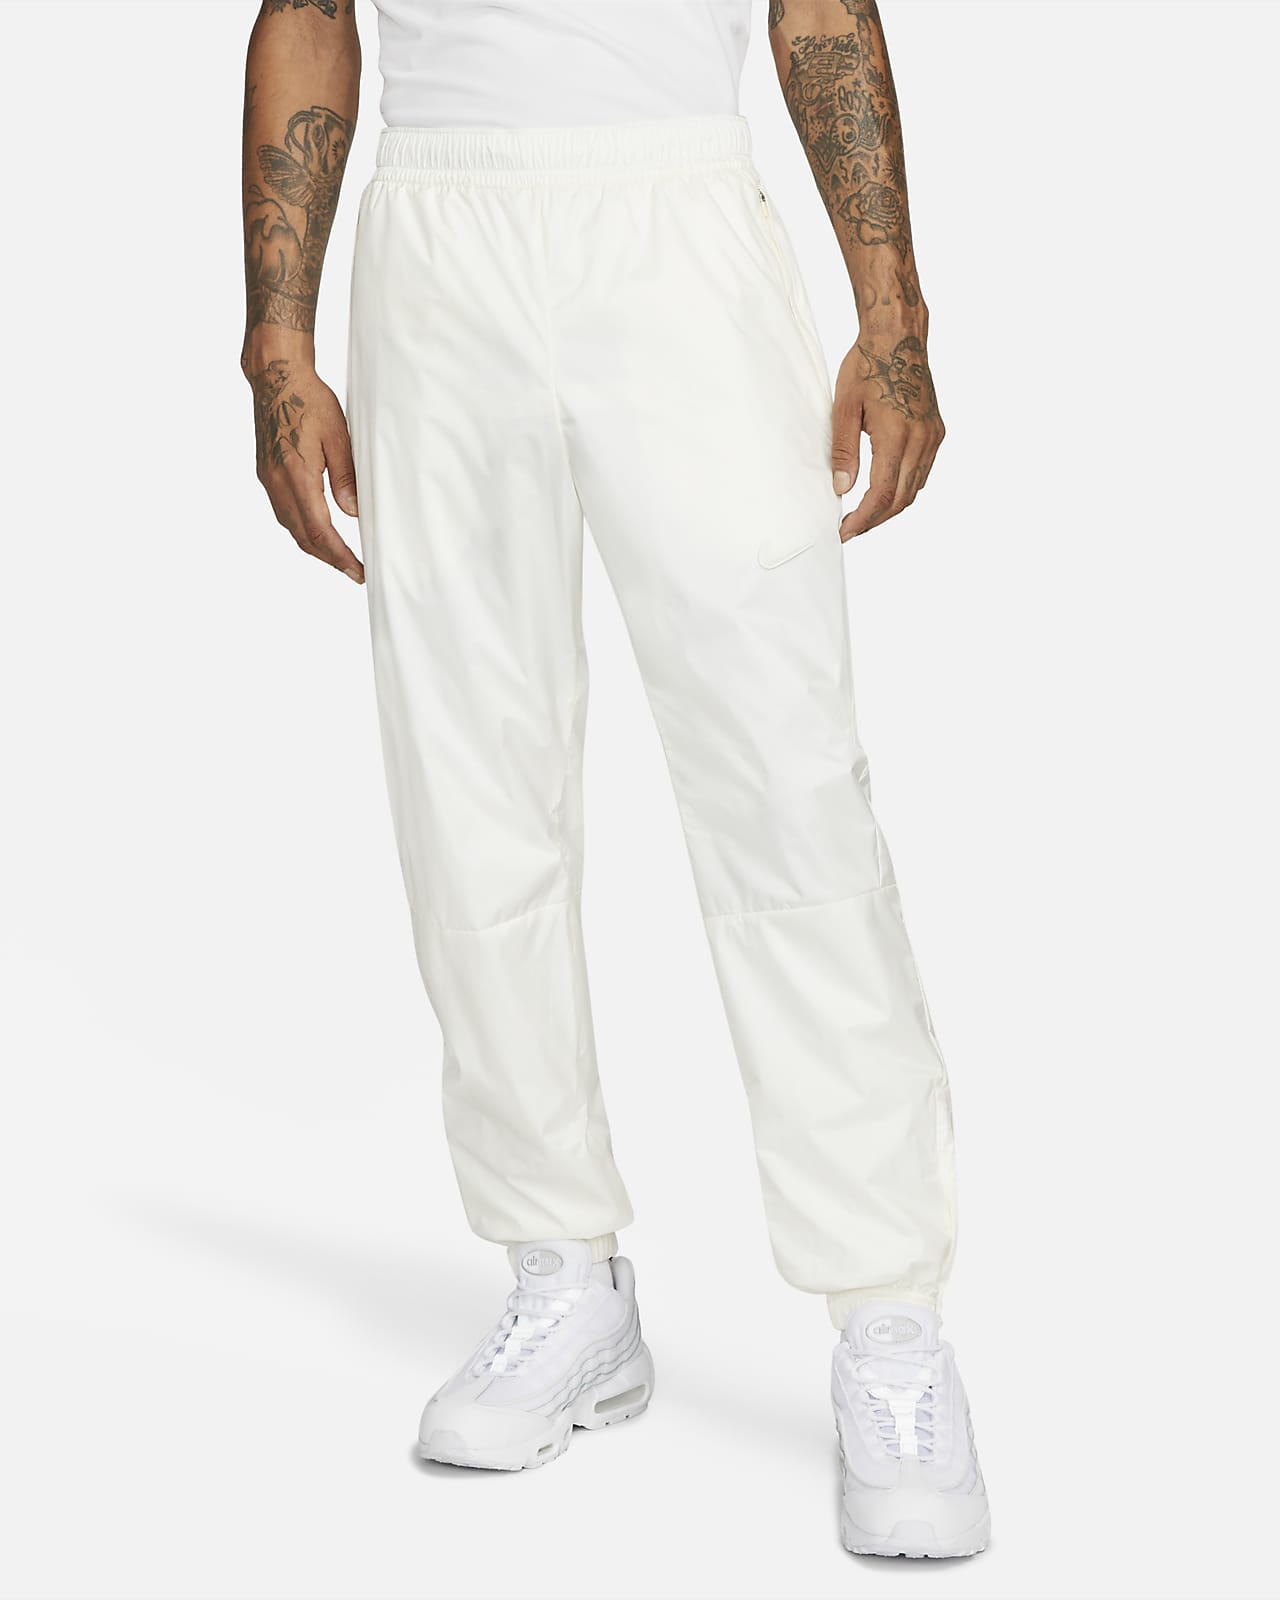 Nike x Drake NOCTA Golf Pants Sail